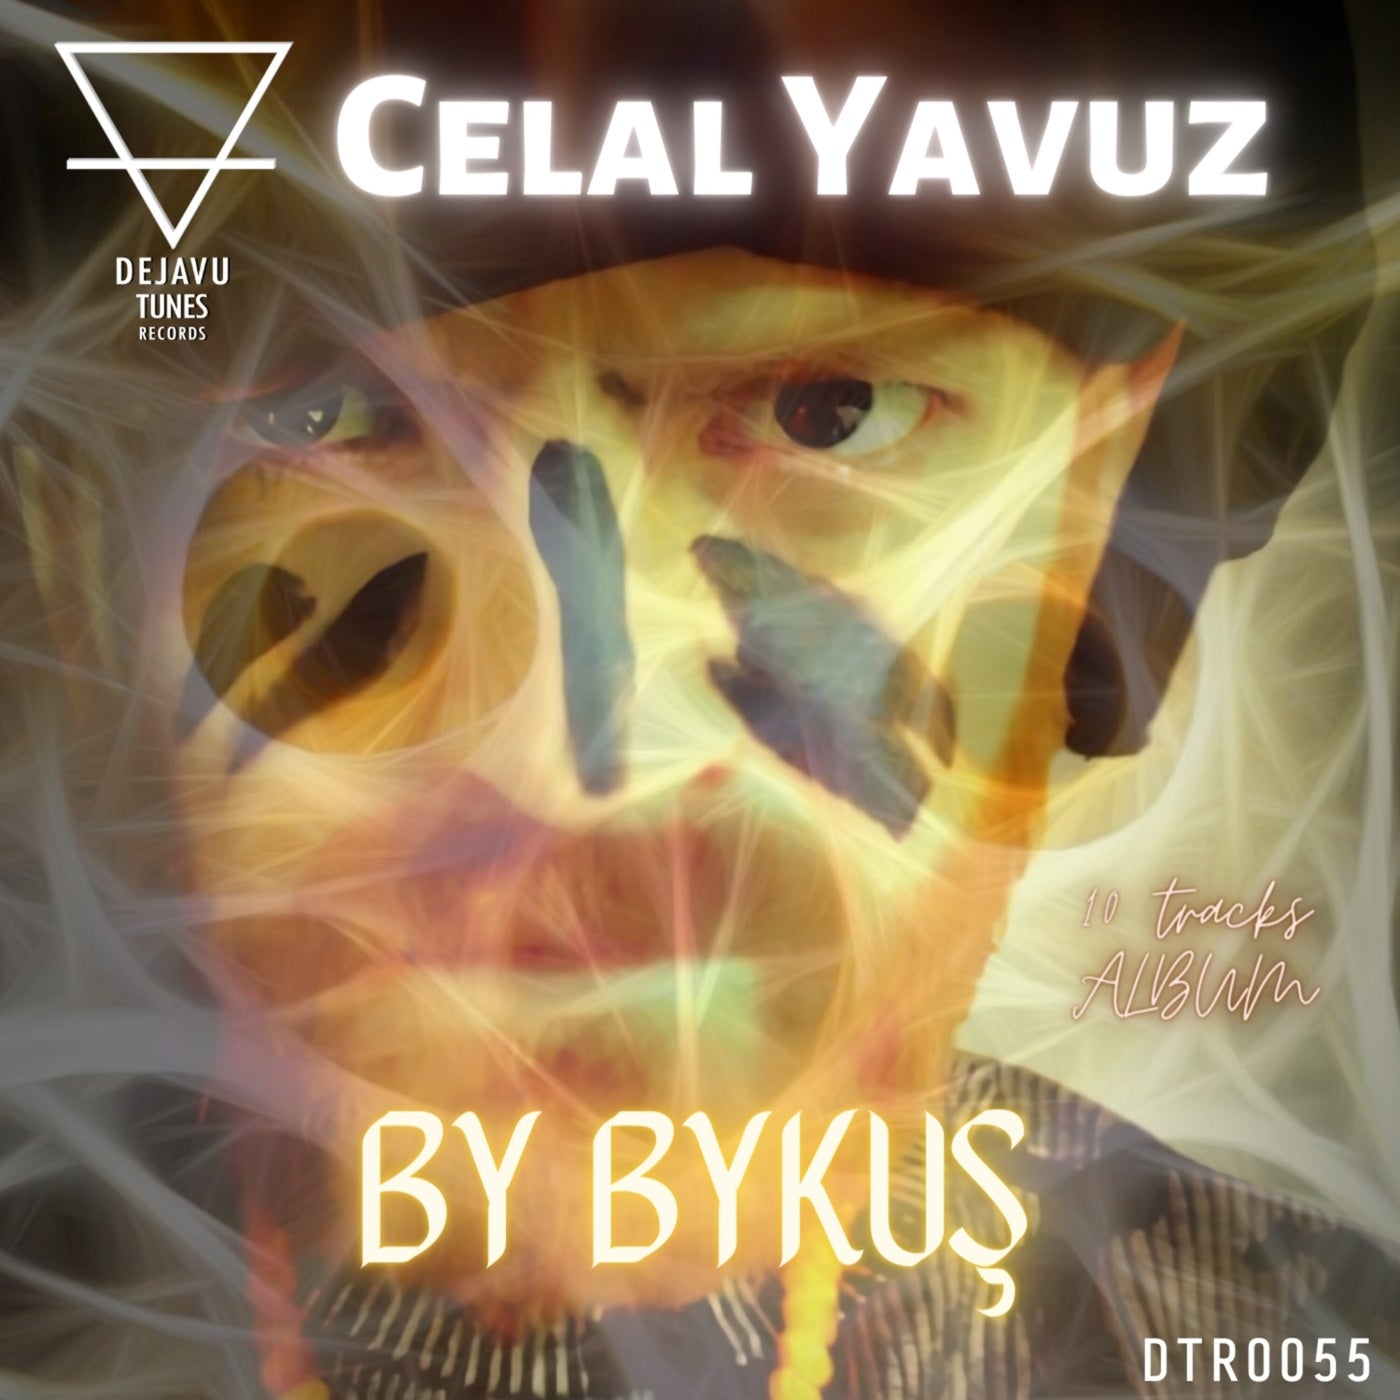 Celal Yavuz - Halo Trip (Original Mix)